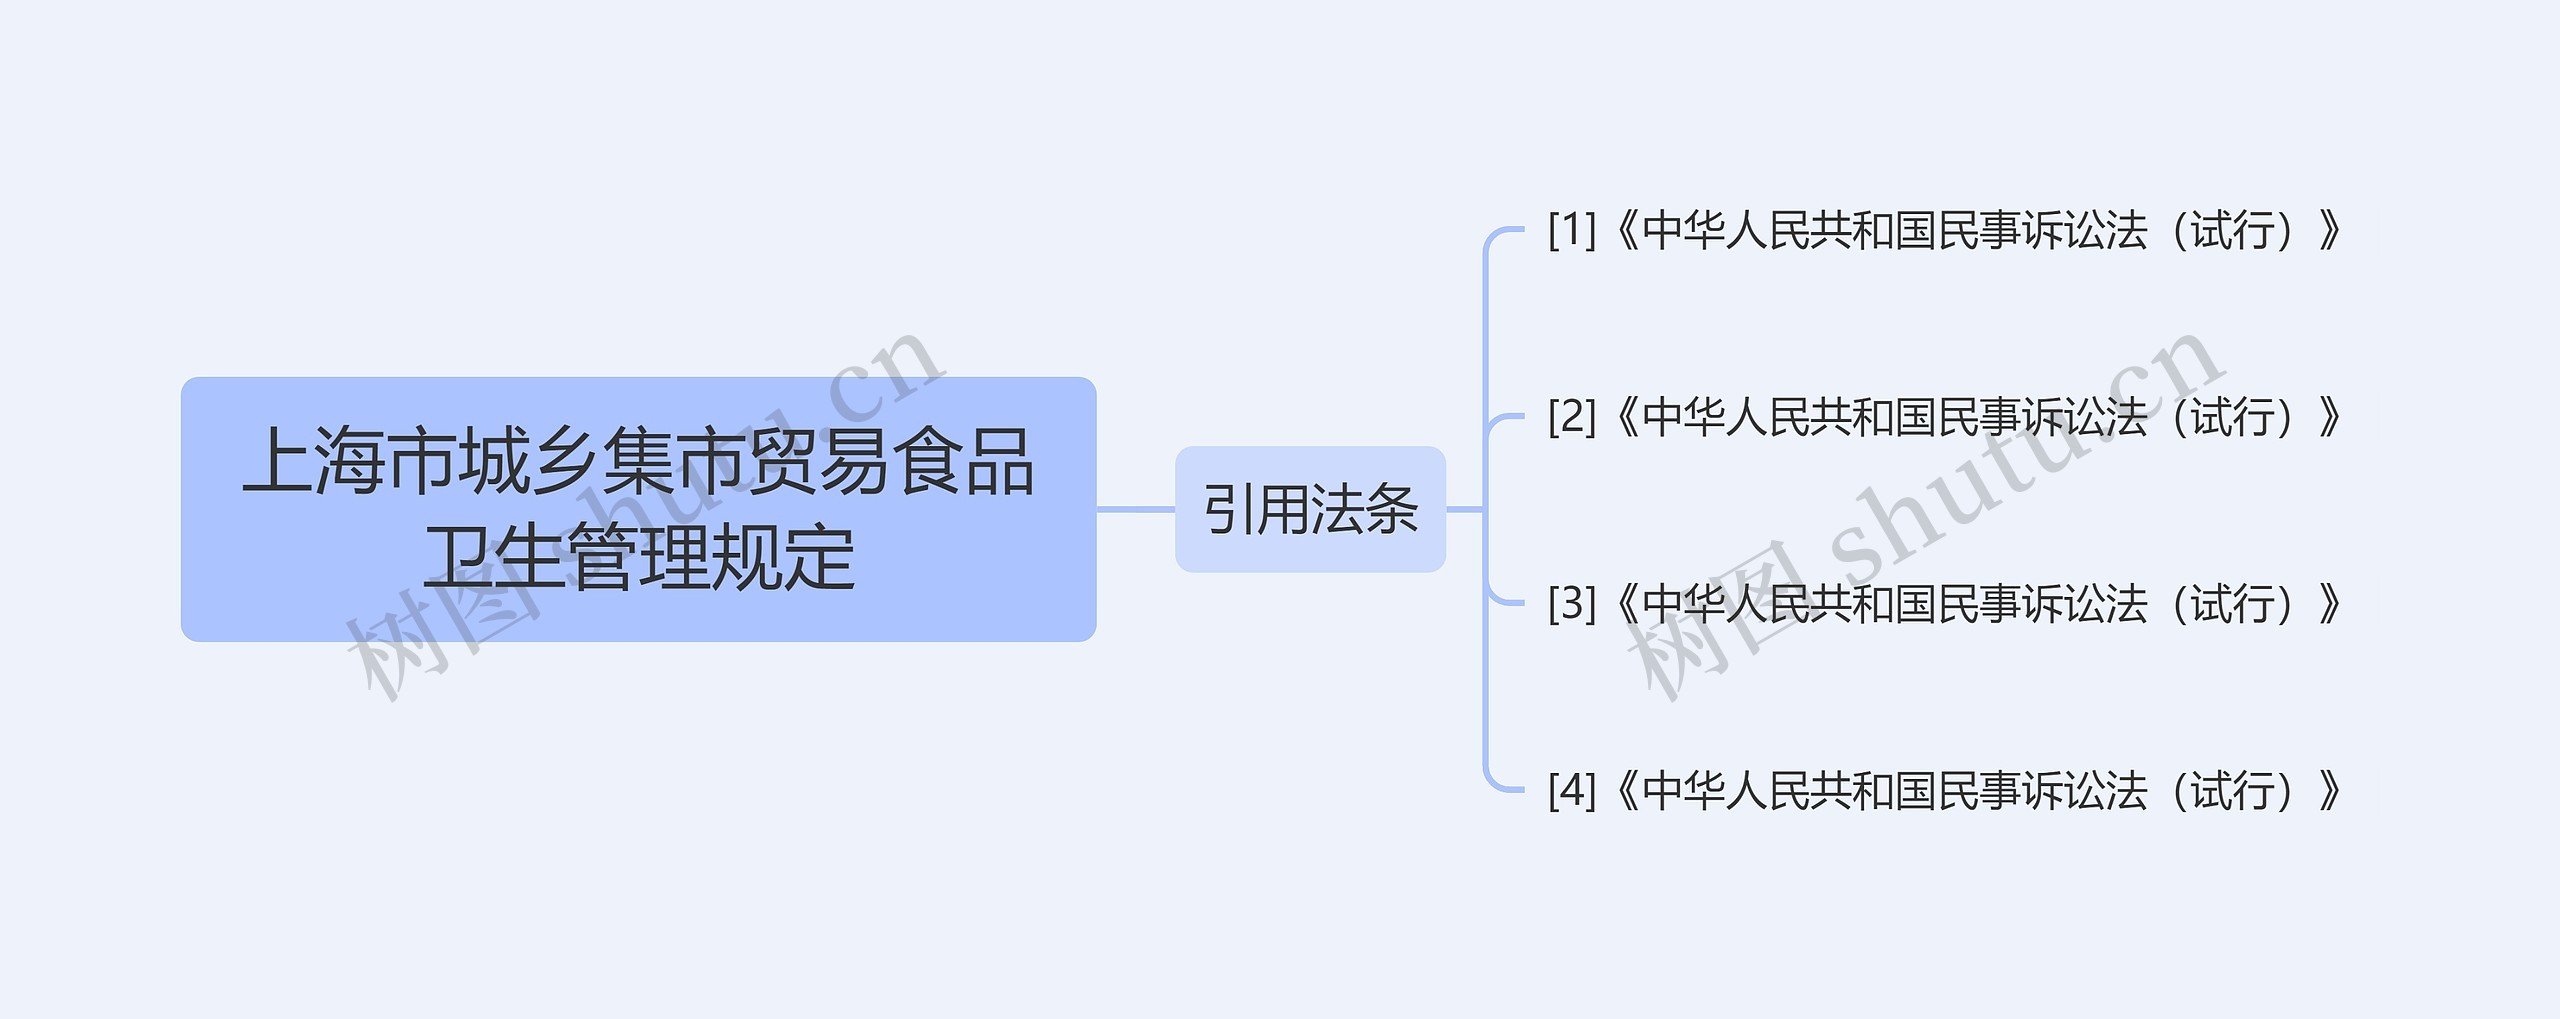 上海市城乡集市贸易食品卫生管理规定思维导图